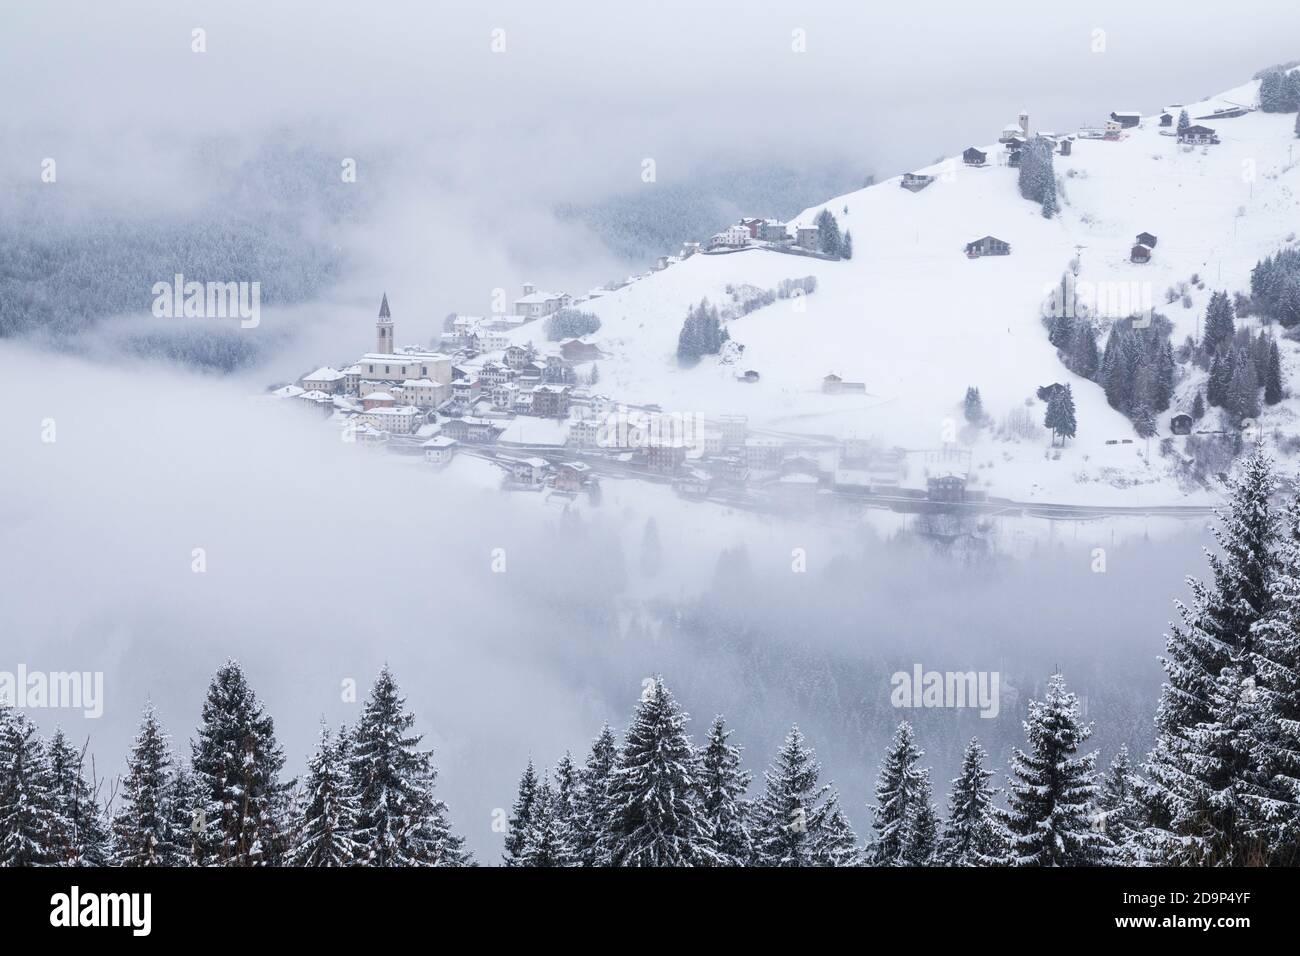 Die Dörfer von Candid und Casamazzagno aus dem Winter Nebel, dolomiten, comelico superiore, belluno, venetien, italien, europa Stockfoto